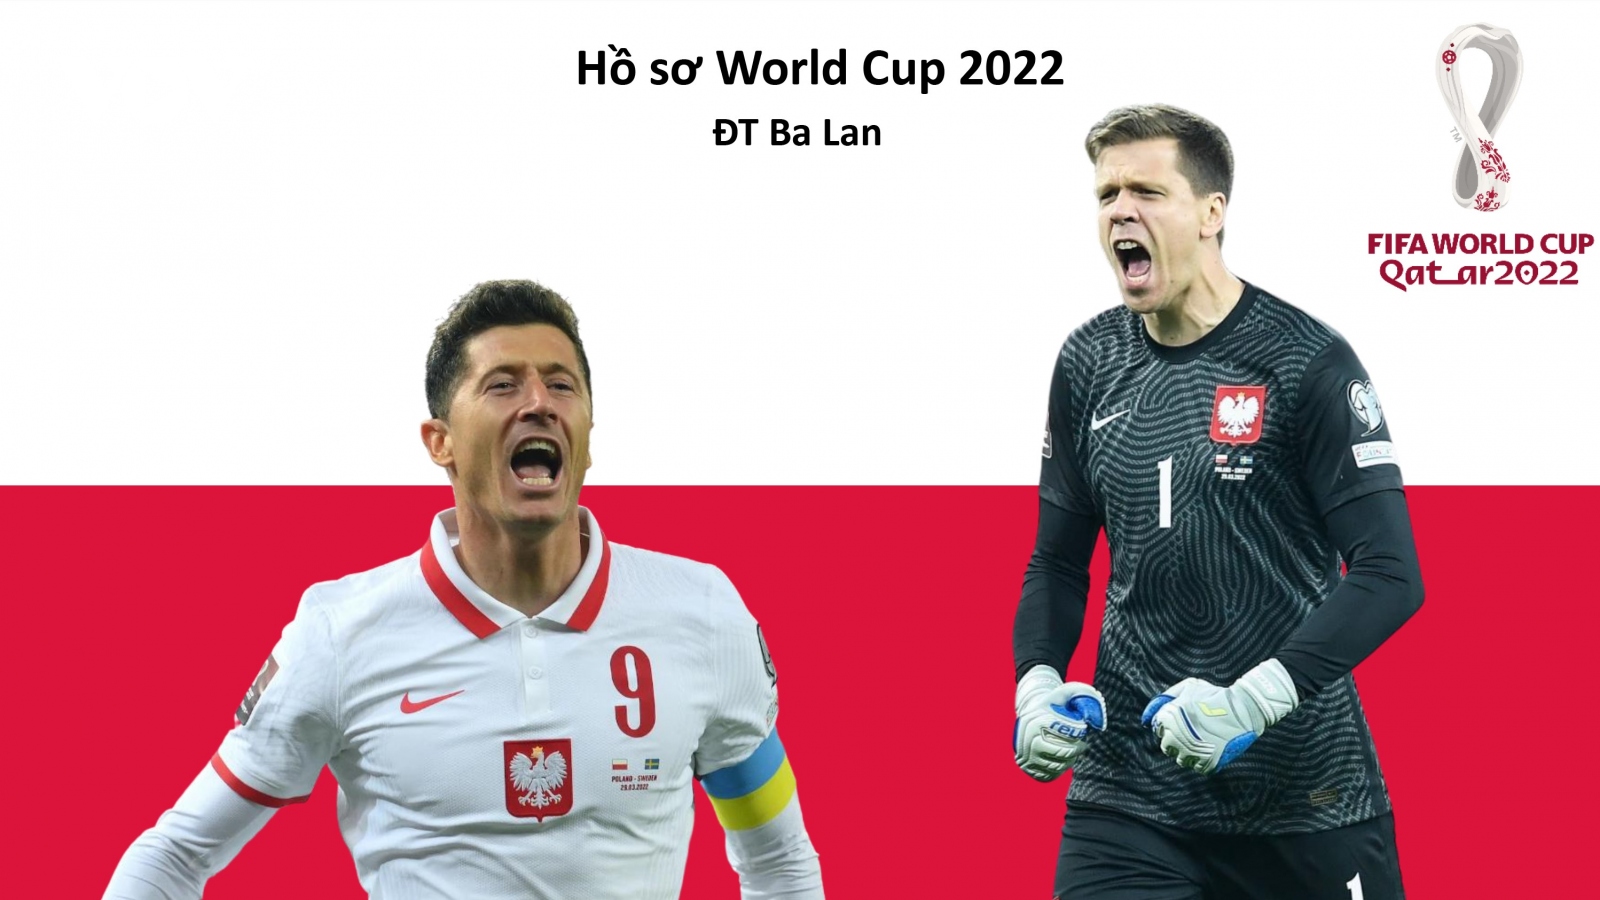 Hồ sơ các ĐT dự VCK World Cup 2022: Đội tuyển Ba Lan